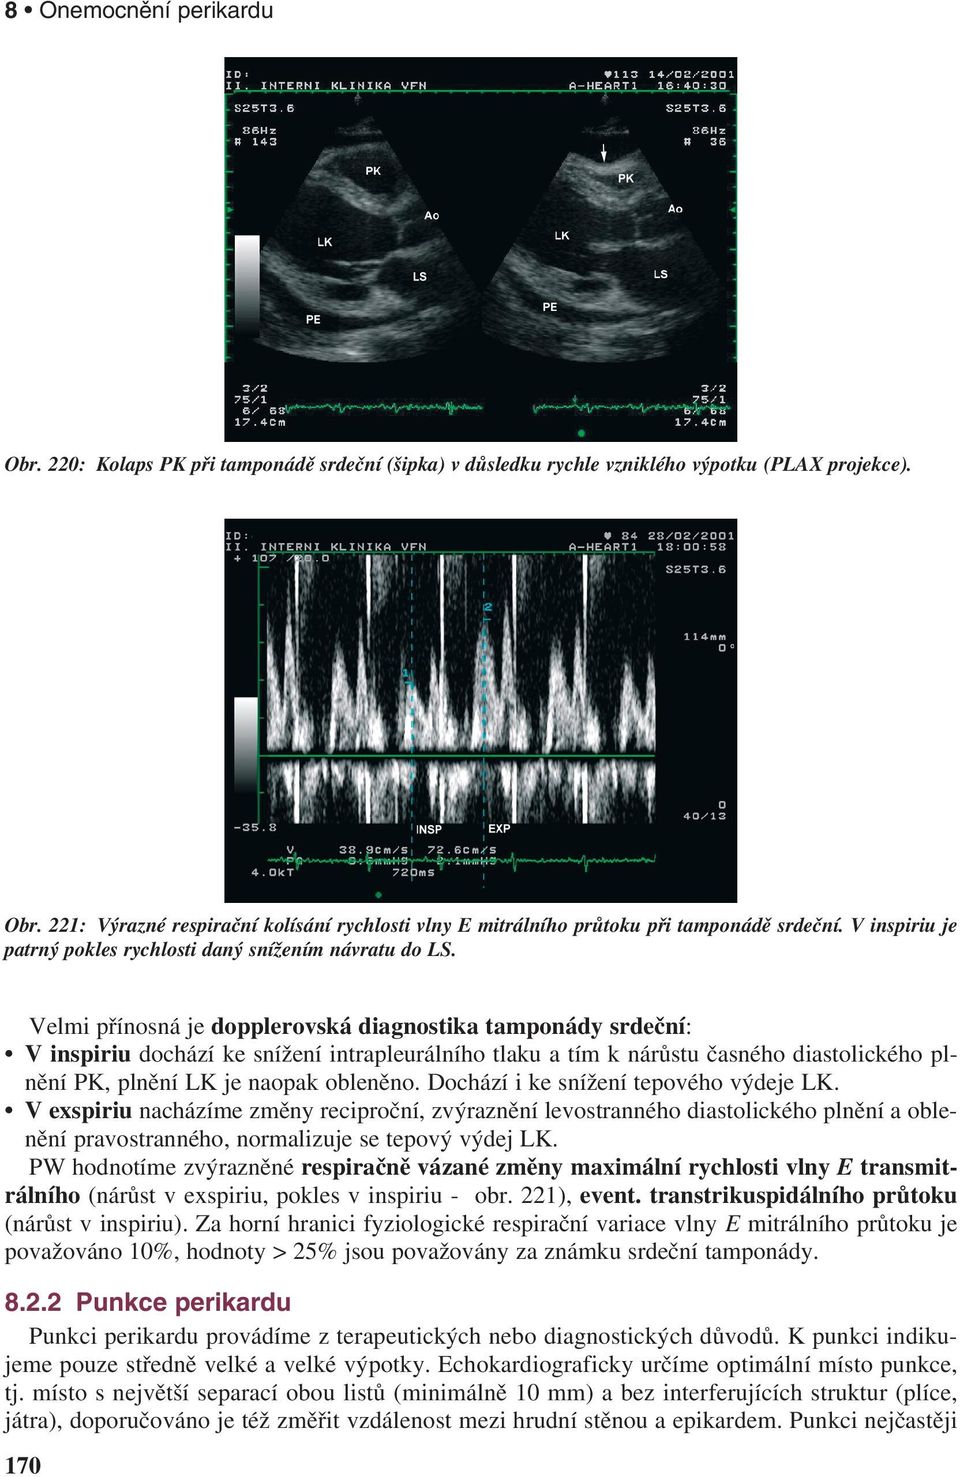 Velmi přínosná je dopplerovská diagnostika tamponády srdeční: Vinspiriu dochází ke snížení intrapleurálního tlaku a tím k nárůstu časného diastolického plnění PK, plnění LK je naopak obleněno.